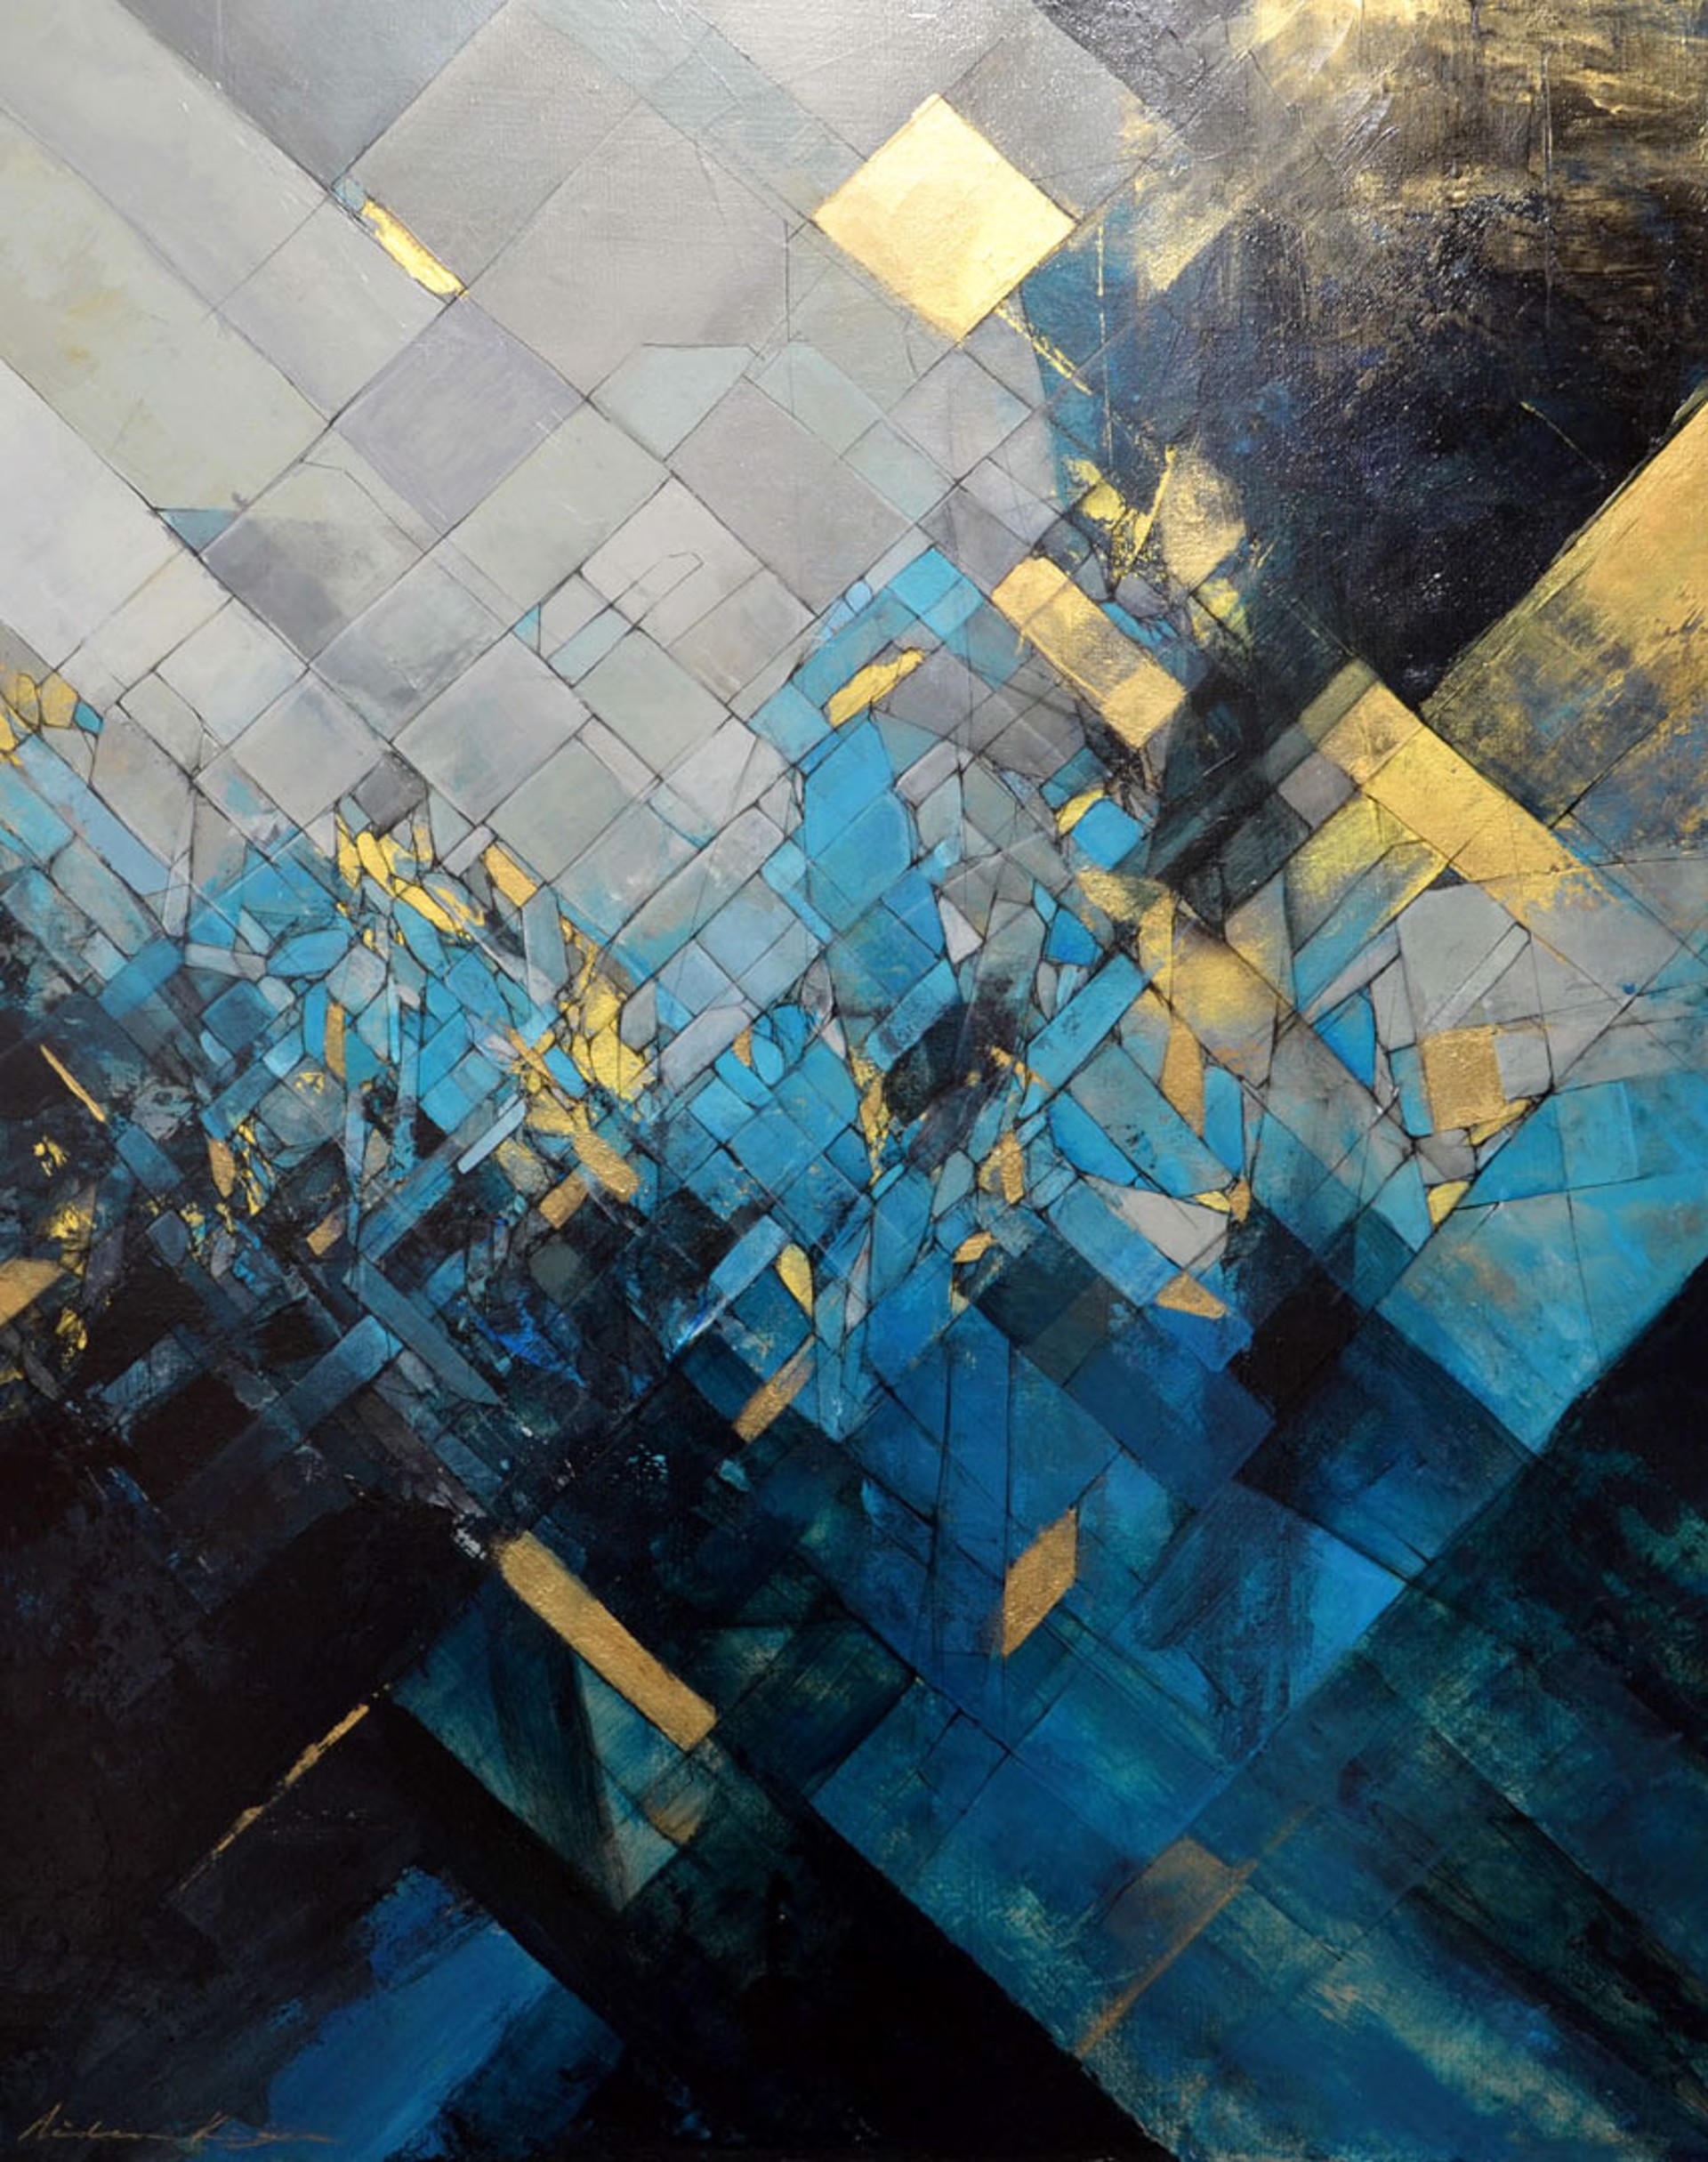 Crystalline Depths by Aiden Kringen